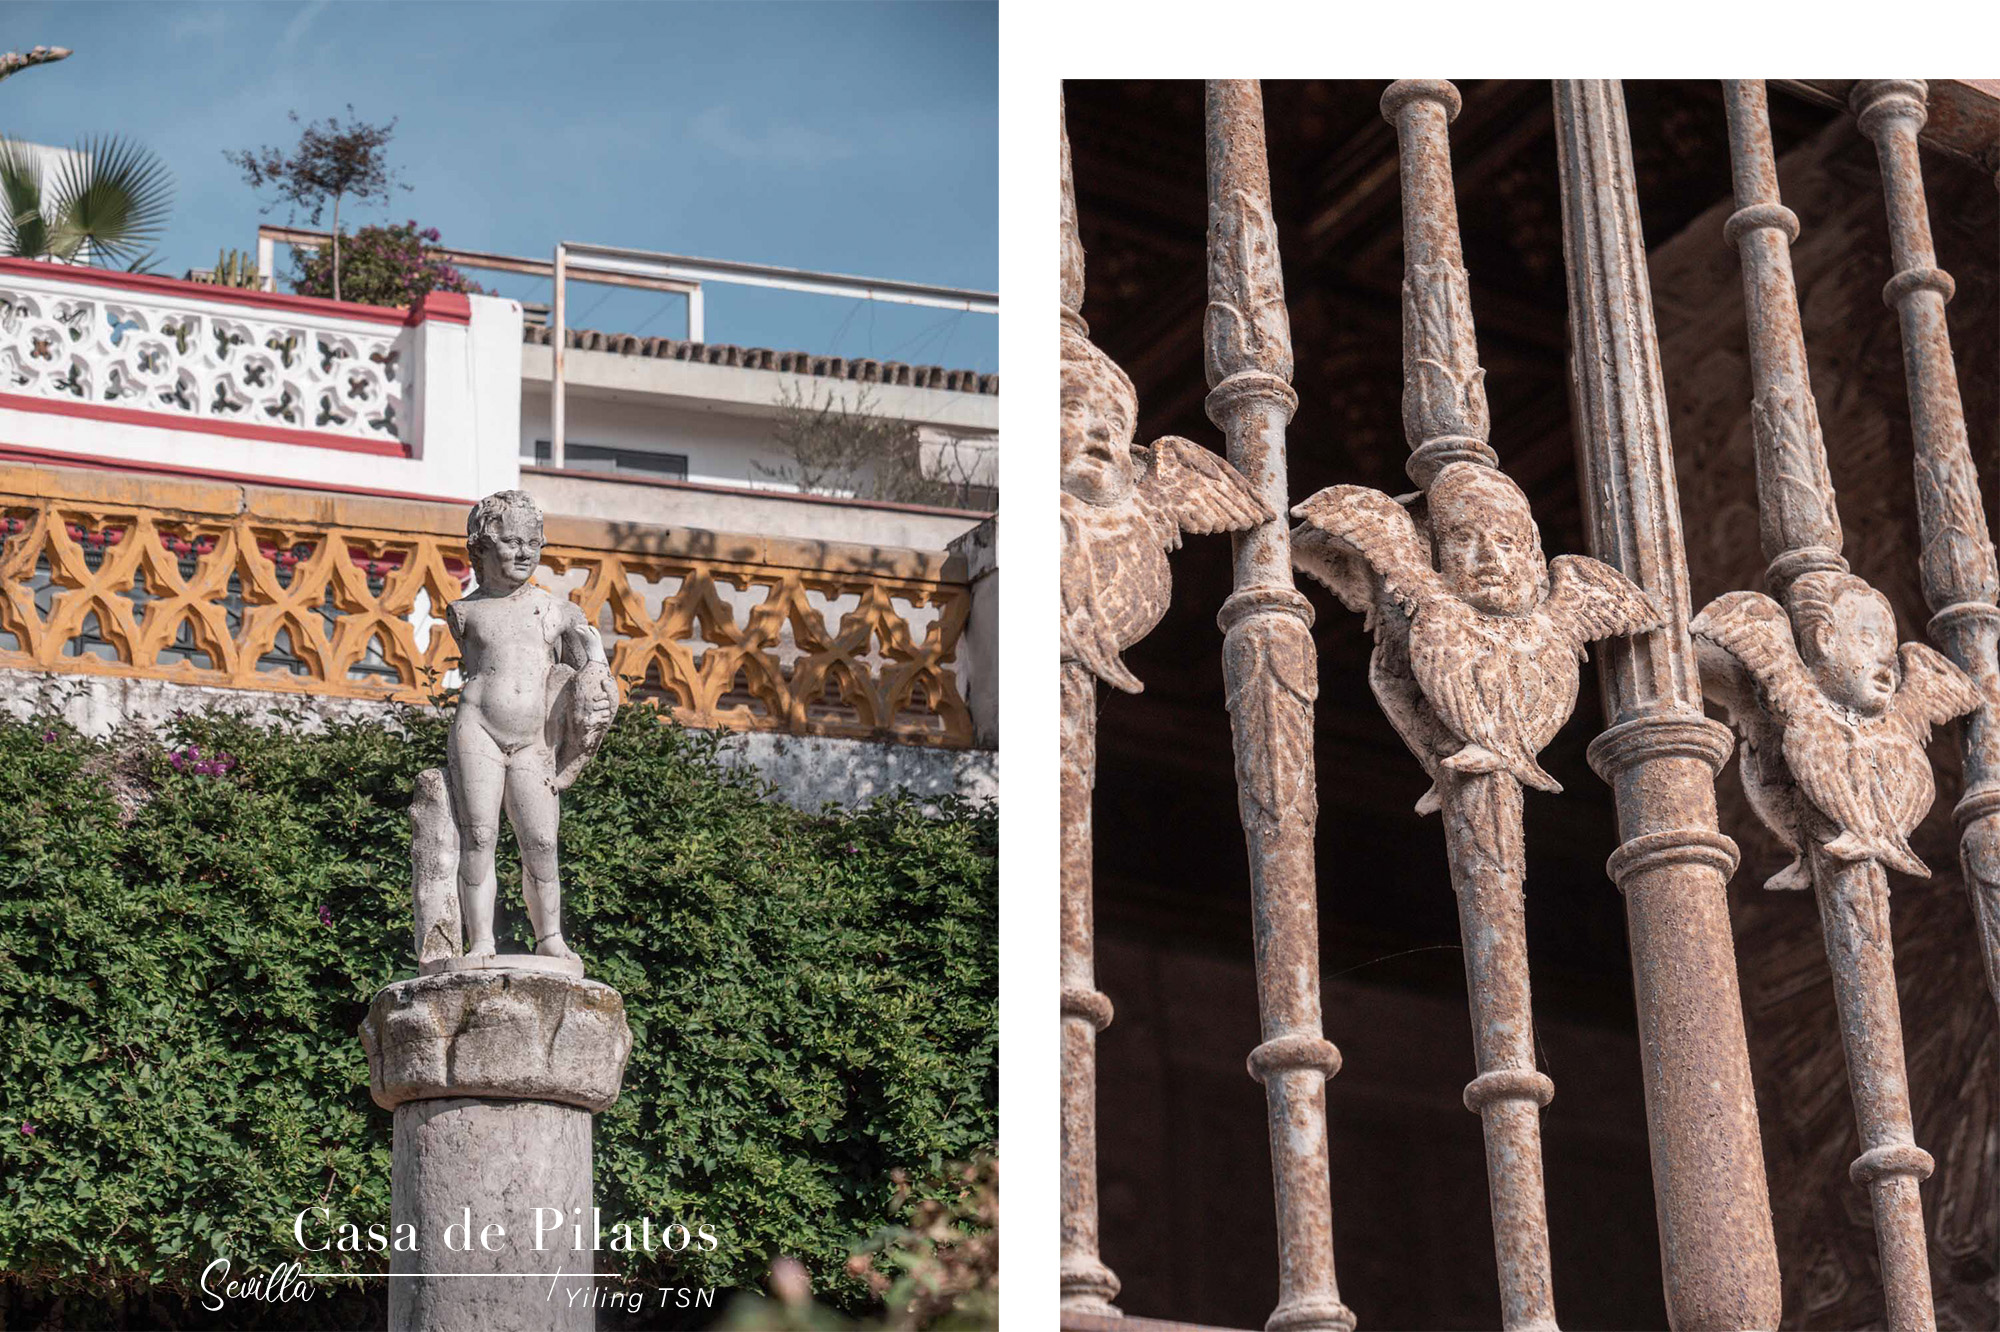 西班牙塞維亞景點｜Casa de Pilatos 彼拉多官邸：摩爾文化與哥德式建築的結合